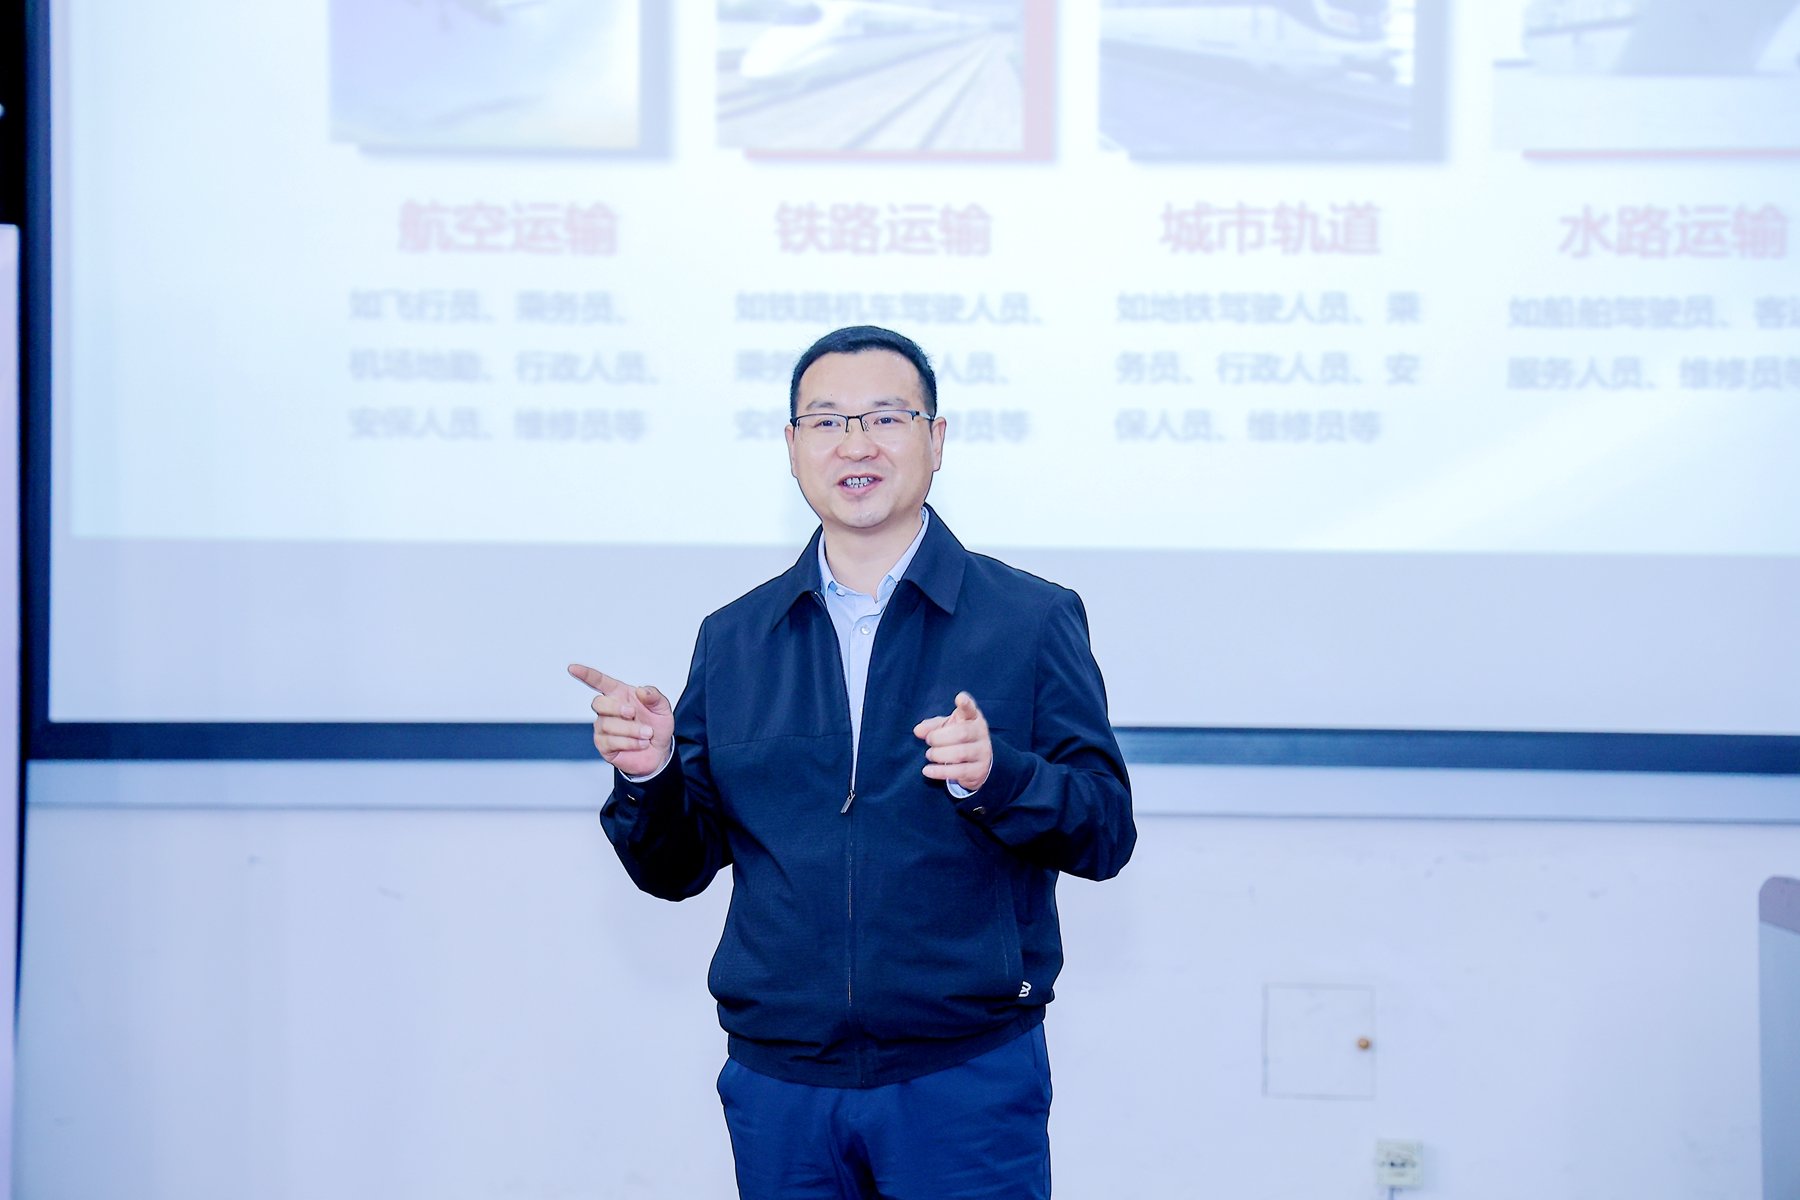 中国服装协会副秘书长兼科技部主任杜岩冰在东华大学宣讲现场